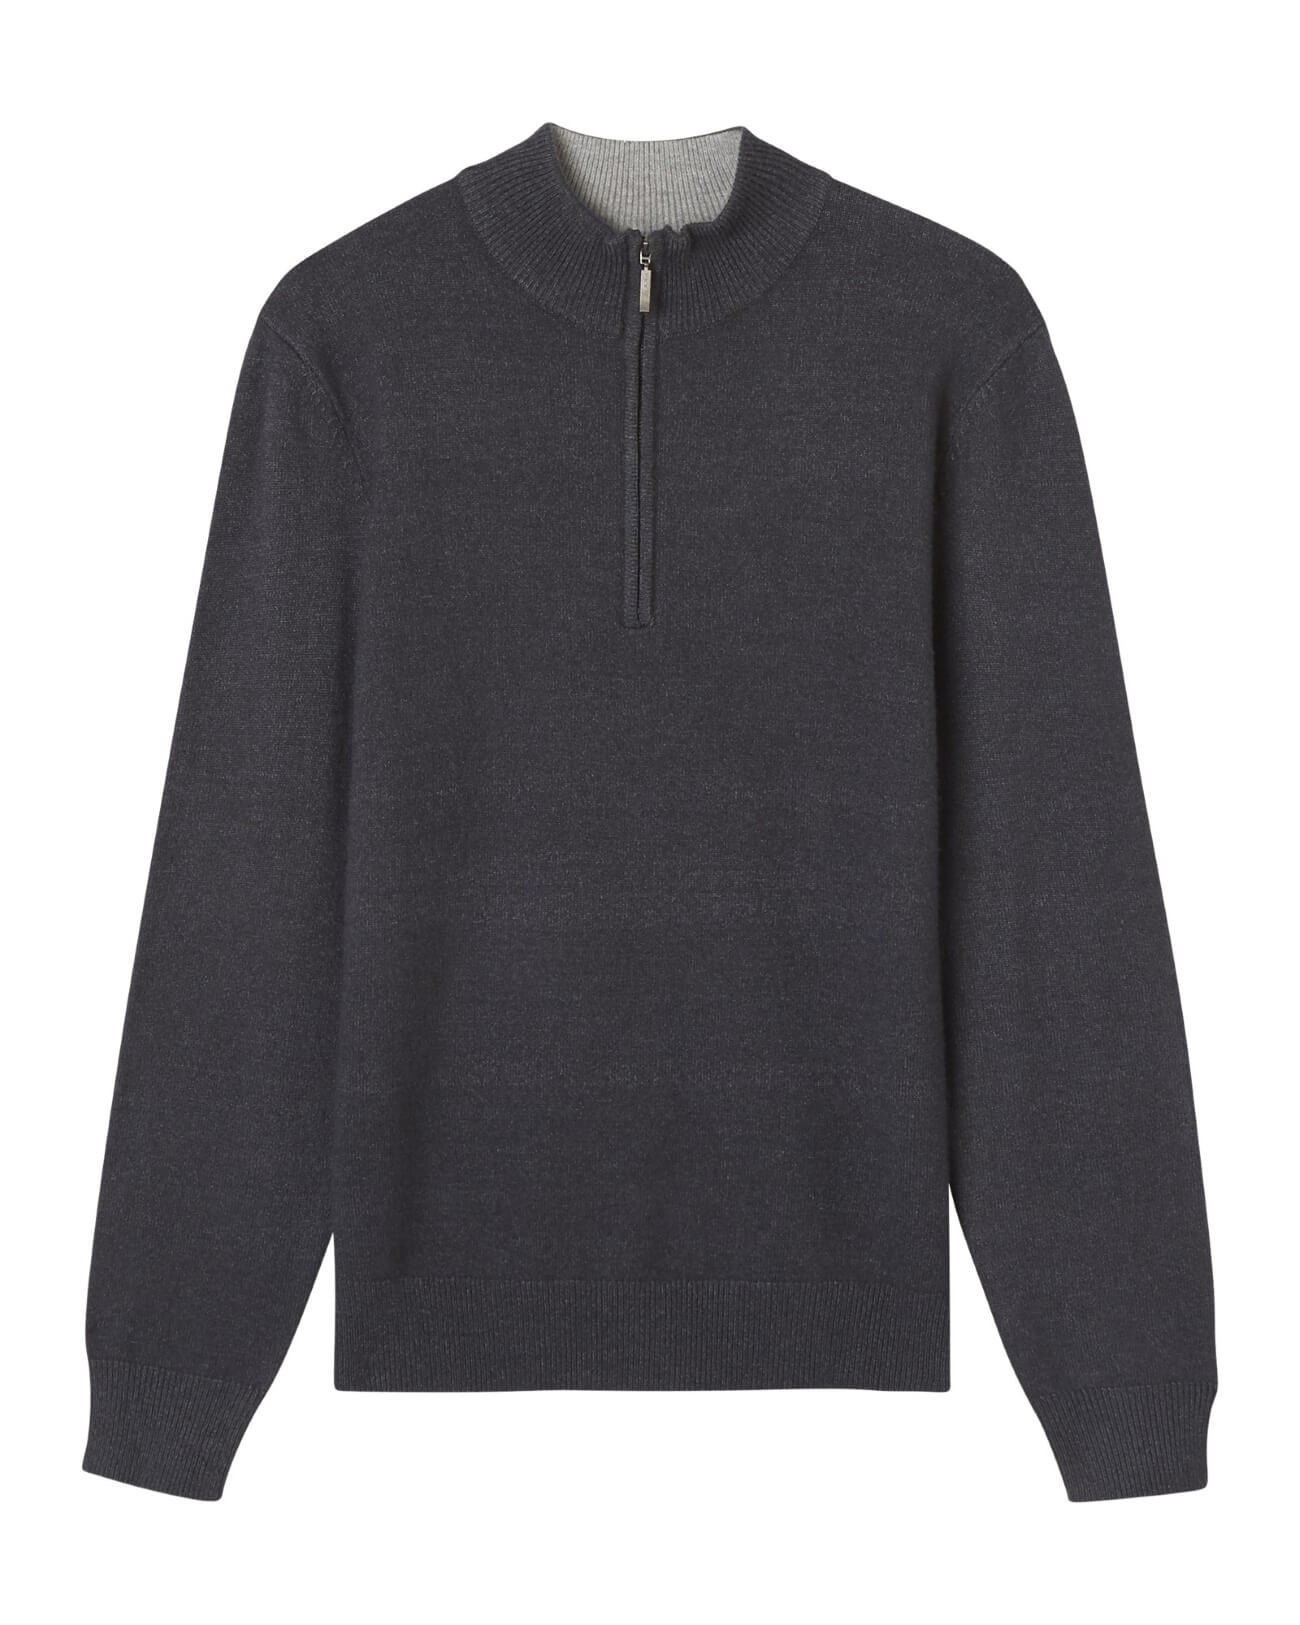 Elie Tahari Men's Quarter Zip Pullover Sweater, Dark Grey Heather